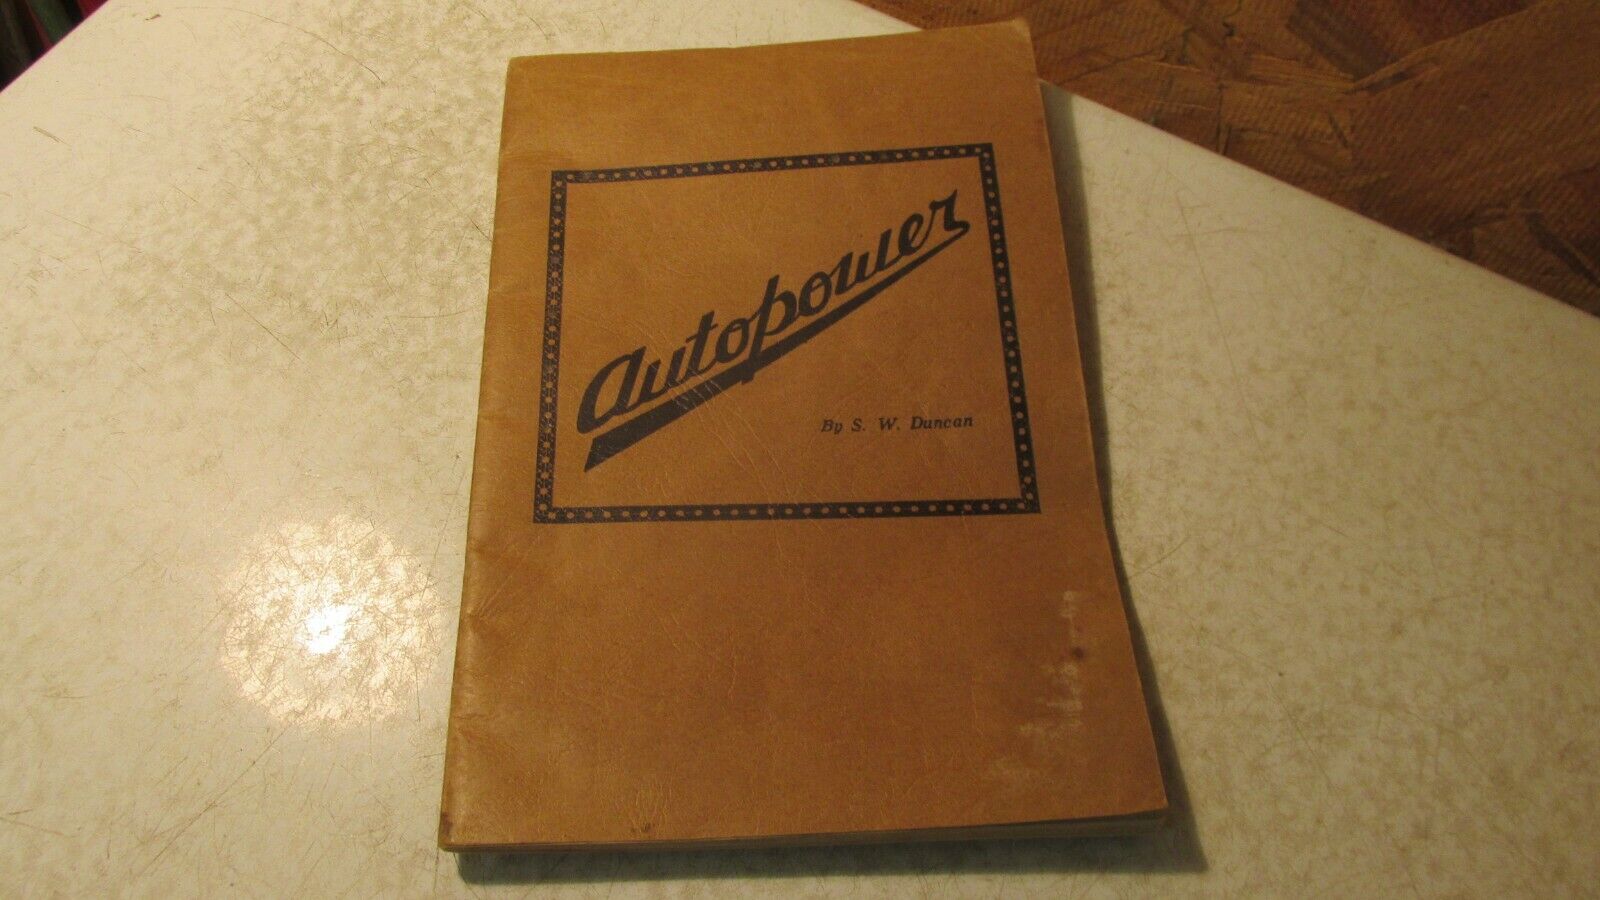 1935 Autopower Booklet- Duncan Auto & Wind Power